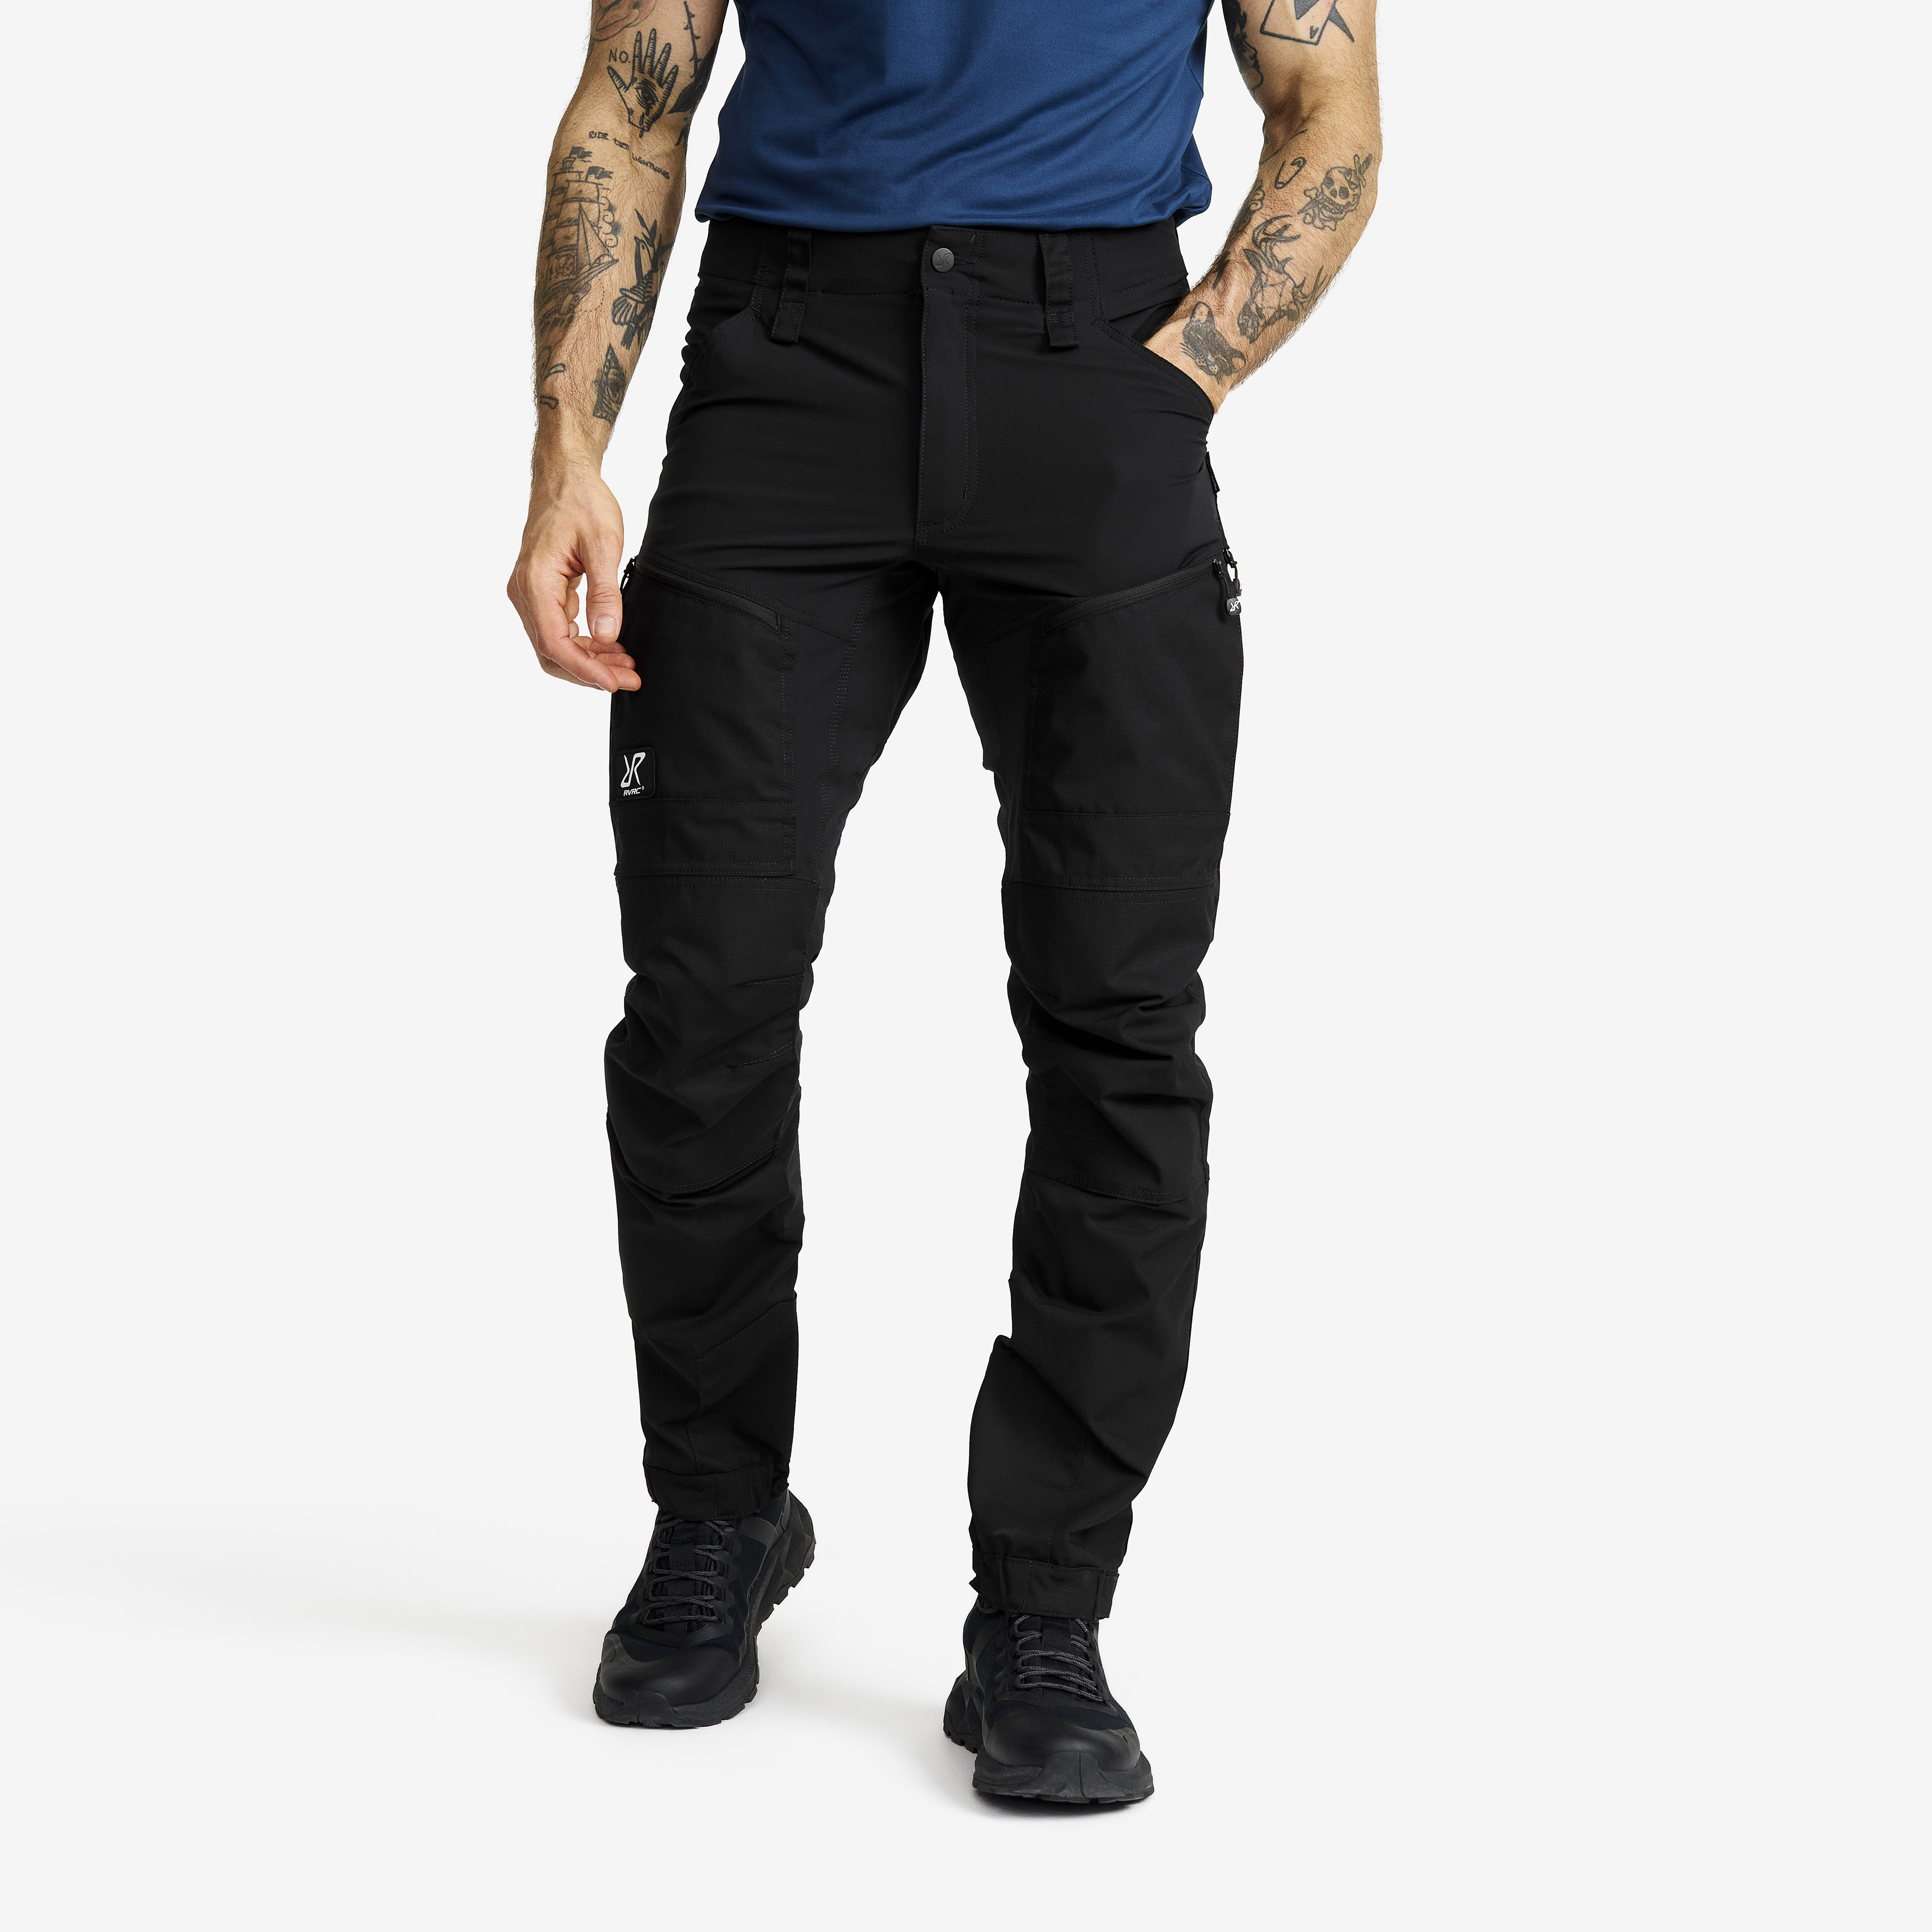 RVRC GP Pro turistické kalhoty pro muže v černé barvě